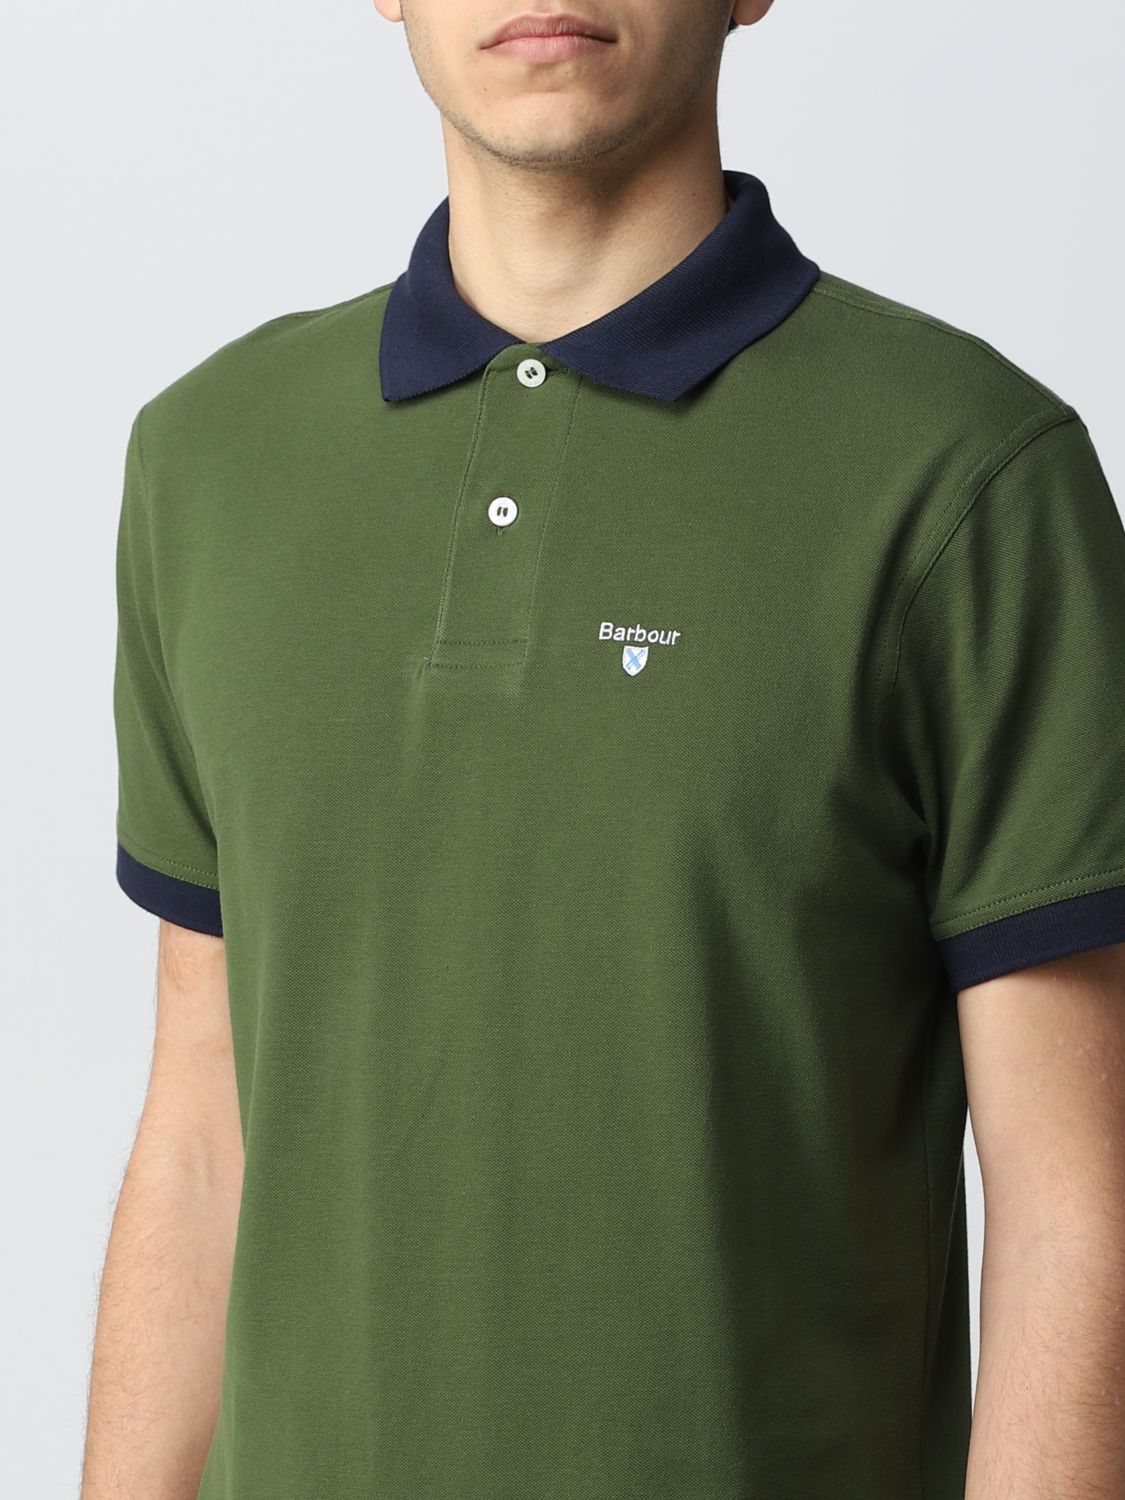 Vuilnisbak voetstuk Bondgenoot BARBOUR: polo shirt for man - Green | Barbour polo shirt MML0887 online on  GIGLIO.COM